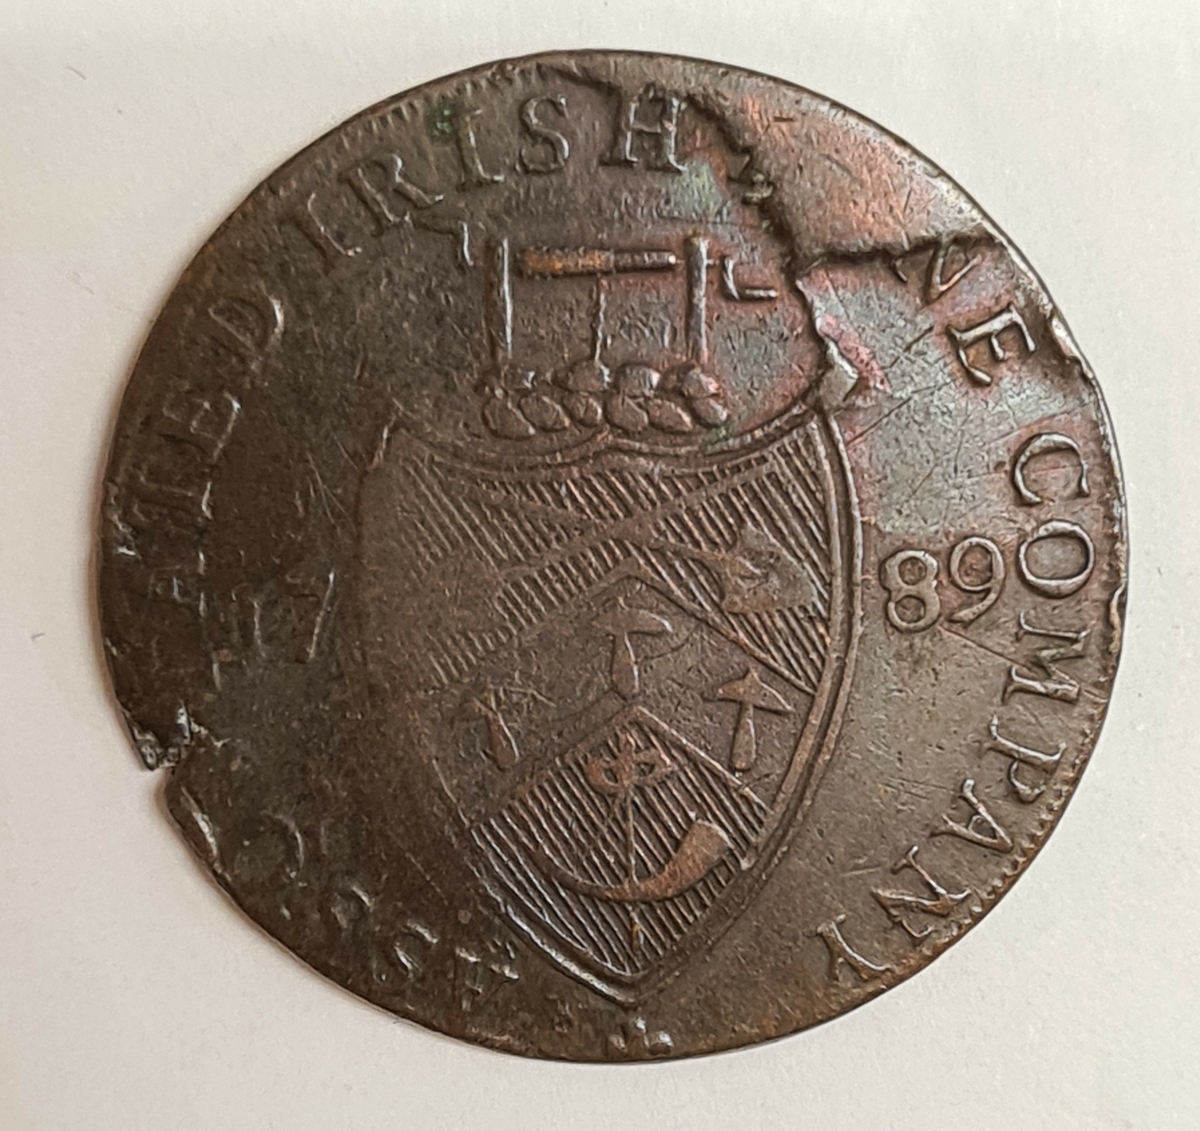 Ett mynt från Irland.
½ Penny, 1789

Tillsida:
CRONEBANE HALFPENNY

Frånsida:
ASSOCIATED IRISH MINERS ARMS
1789